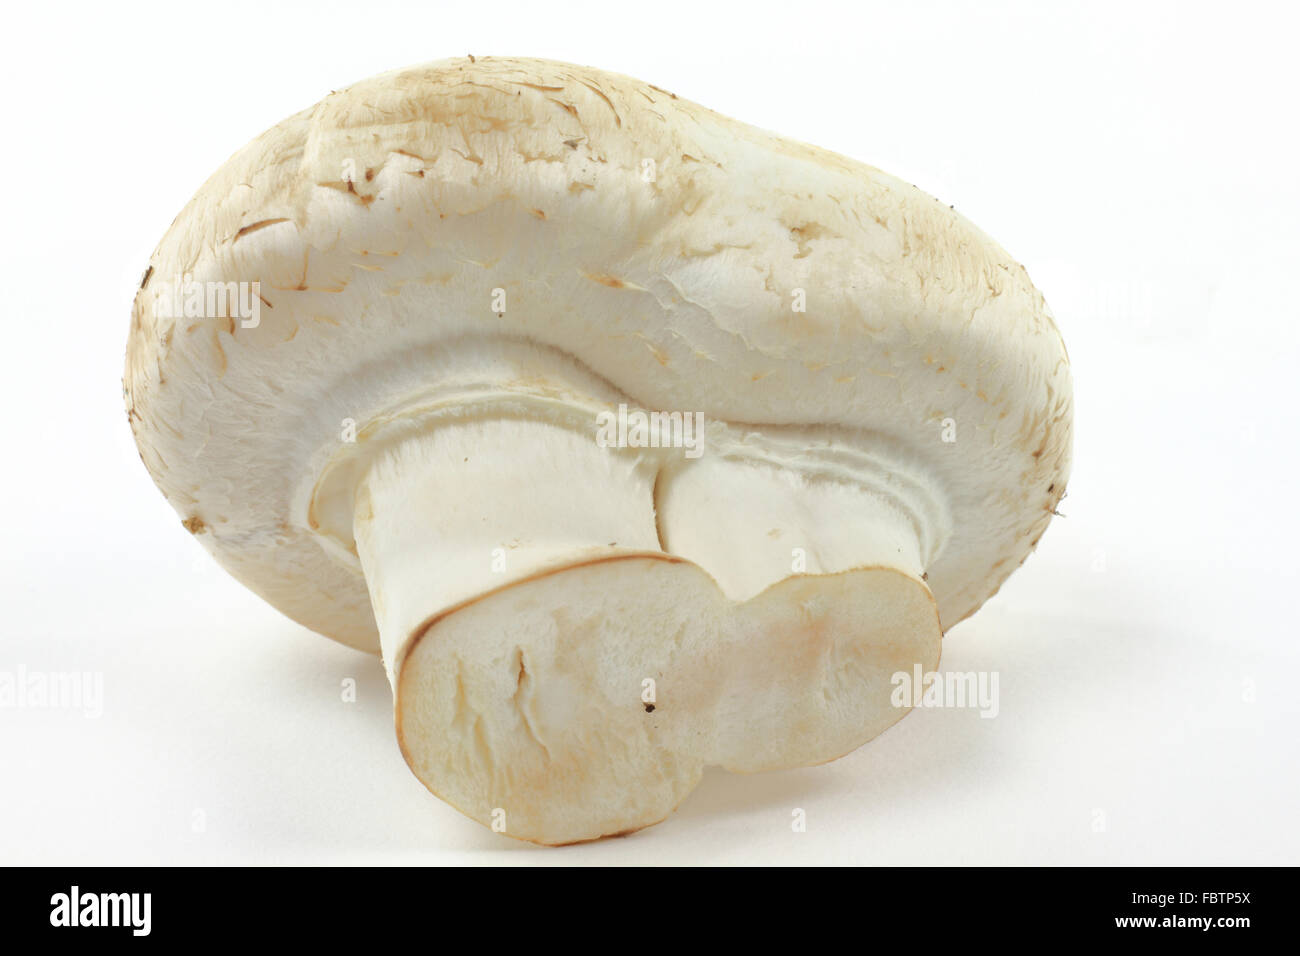 Macro picture of Organic White mushroom. Stock Photo